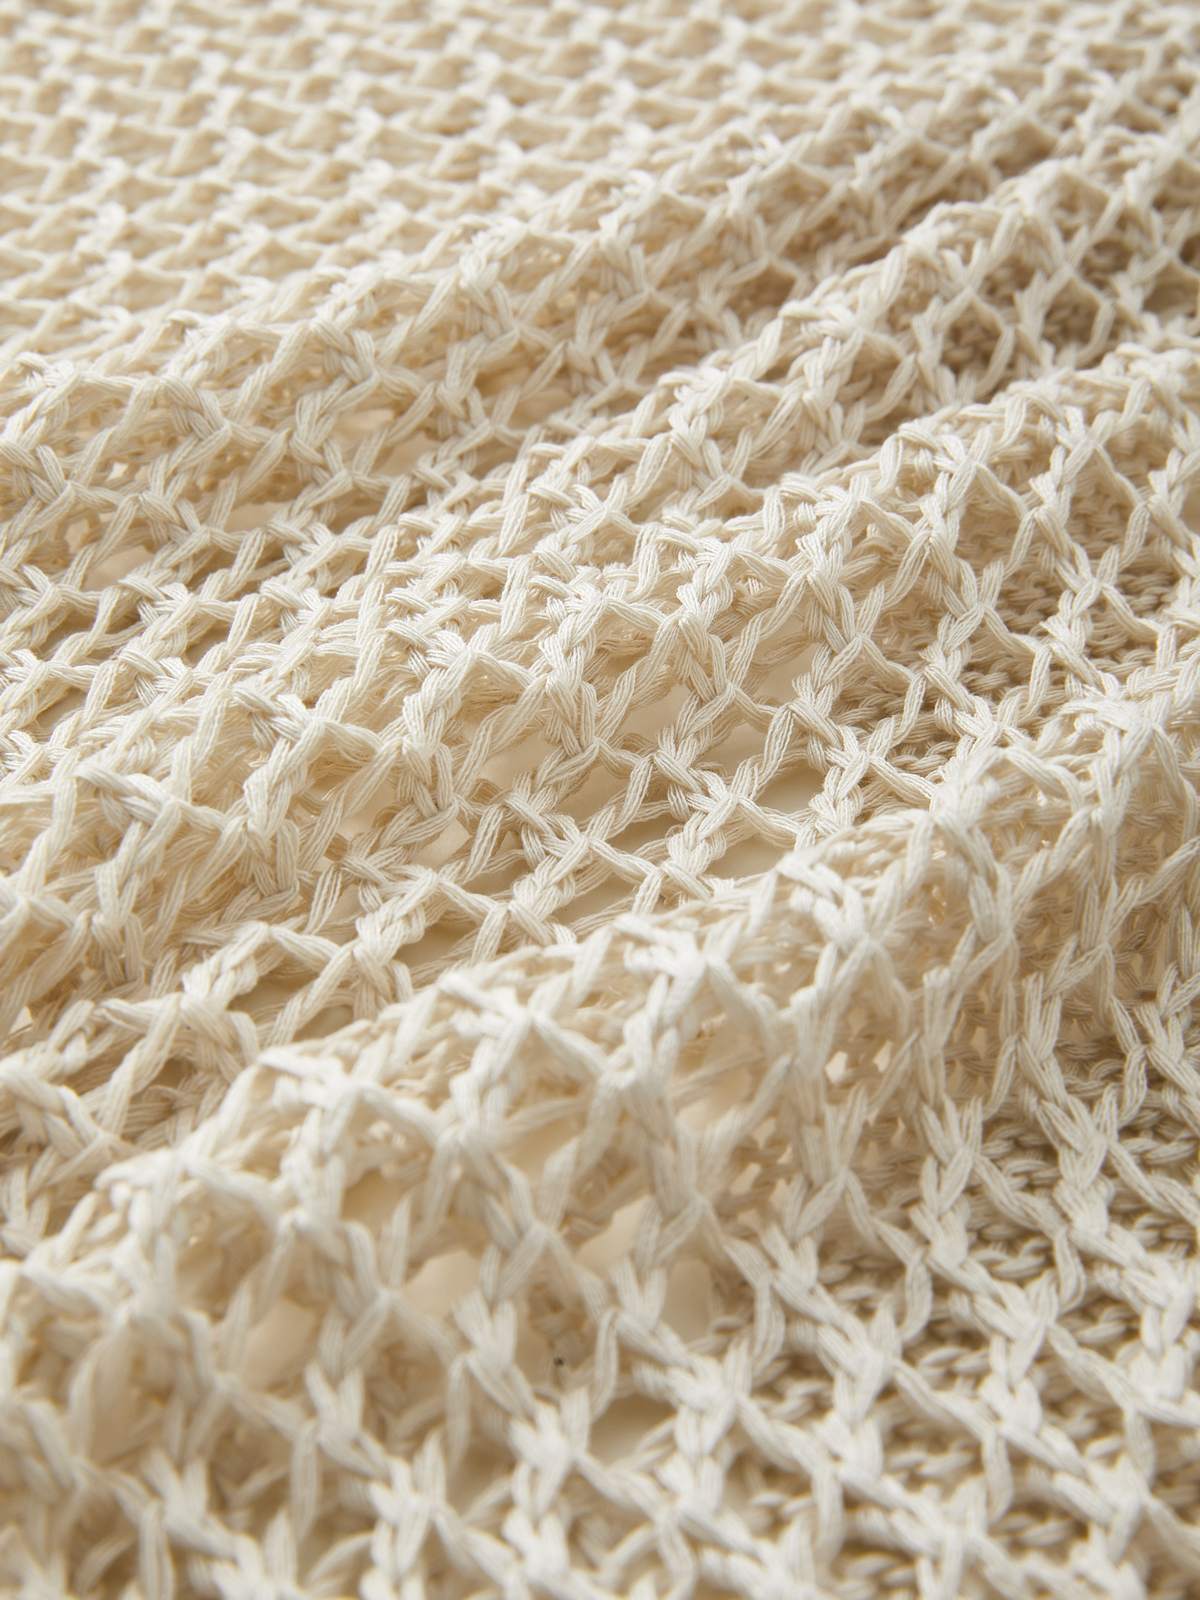 Cross Pattern Crochet Hollow Long Sleeve Knit Top